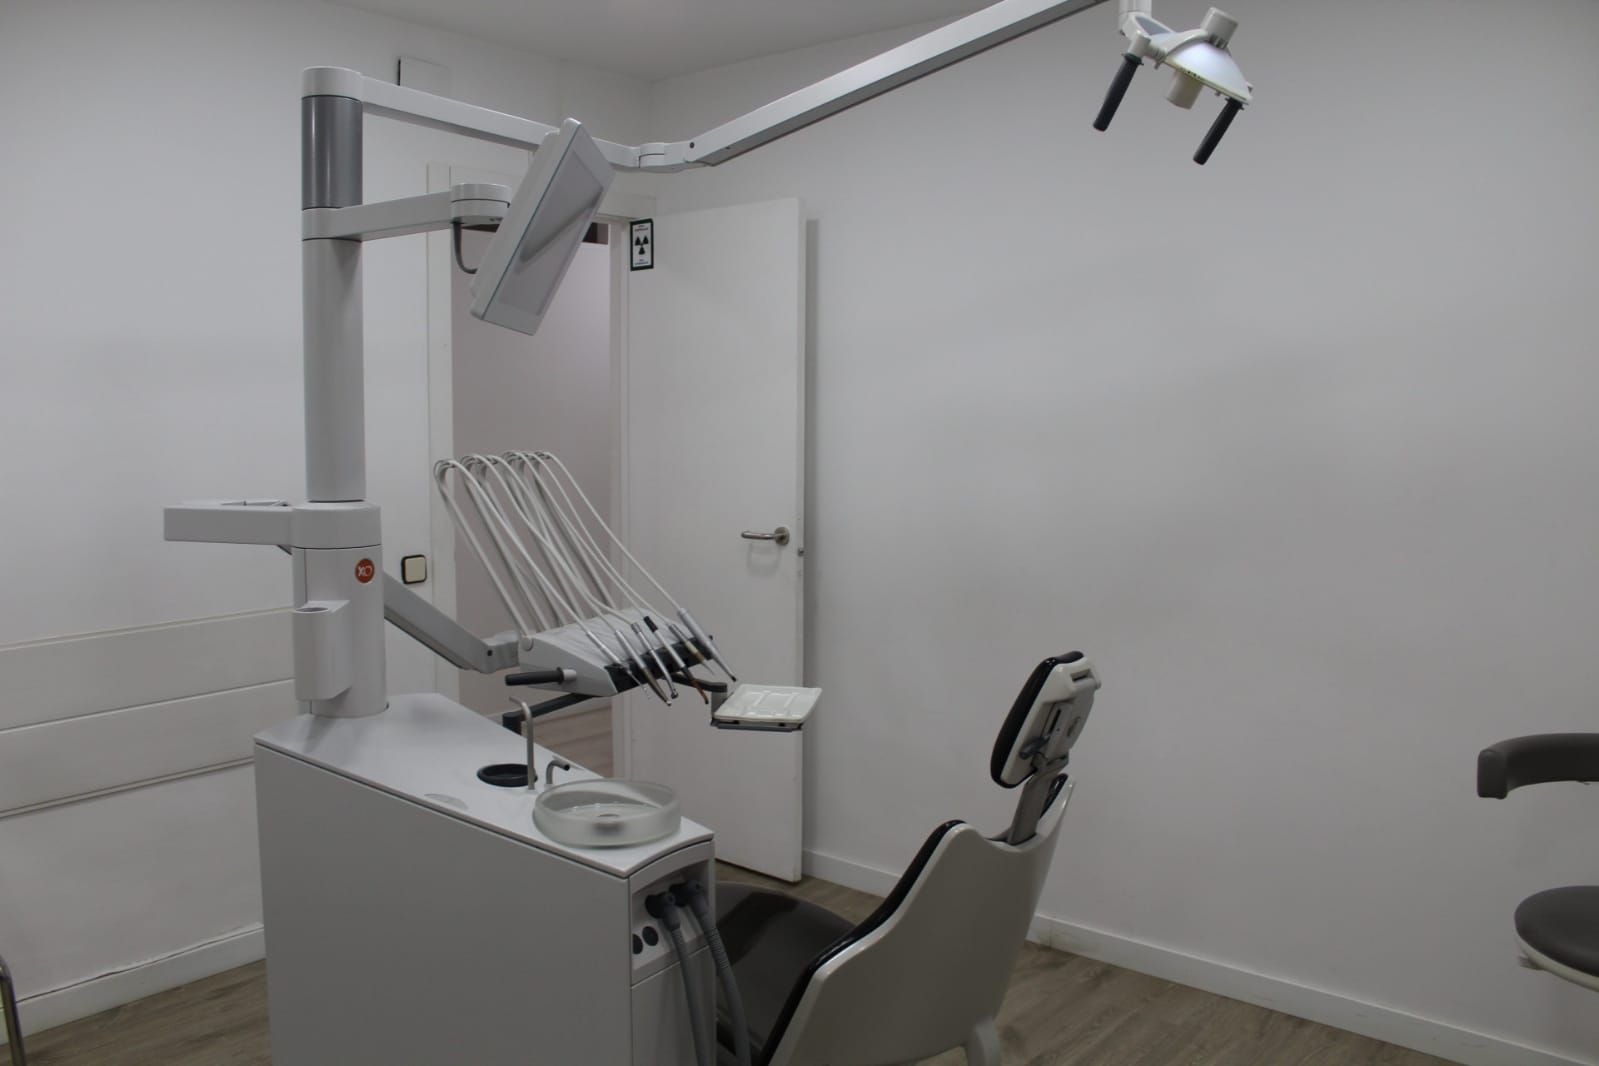 Foto 28 de Especialistas en estética dental en  | Clínica Dental La Mallola